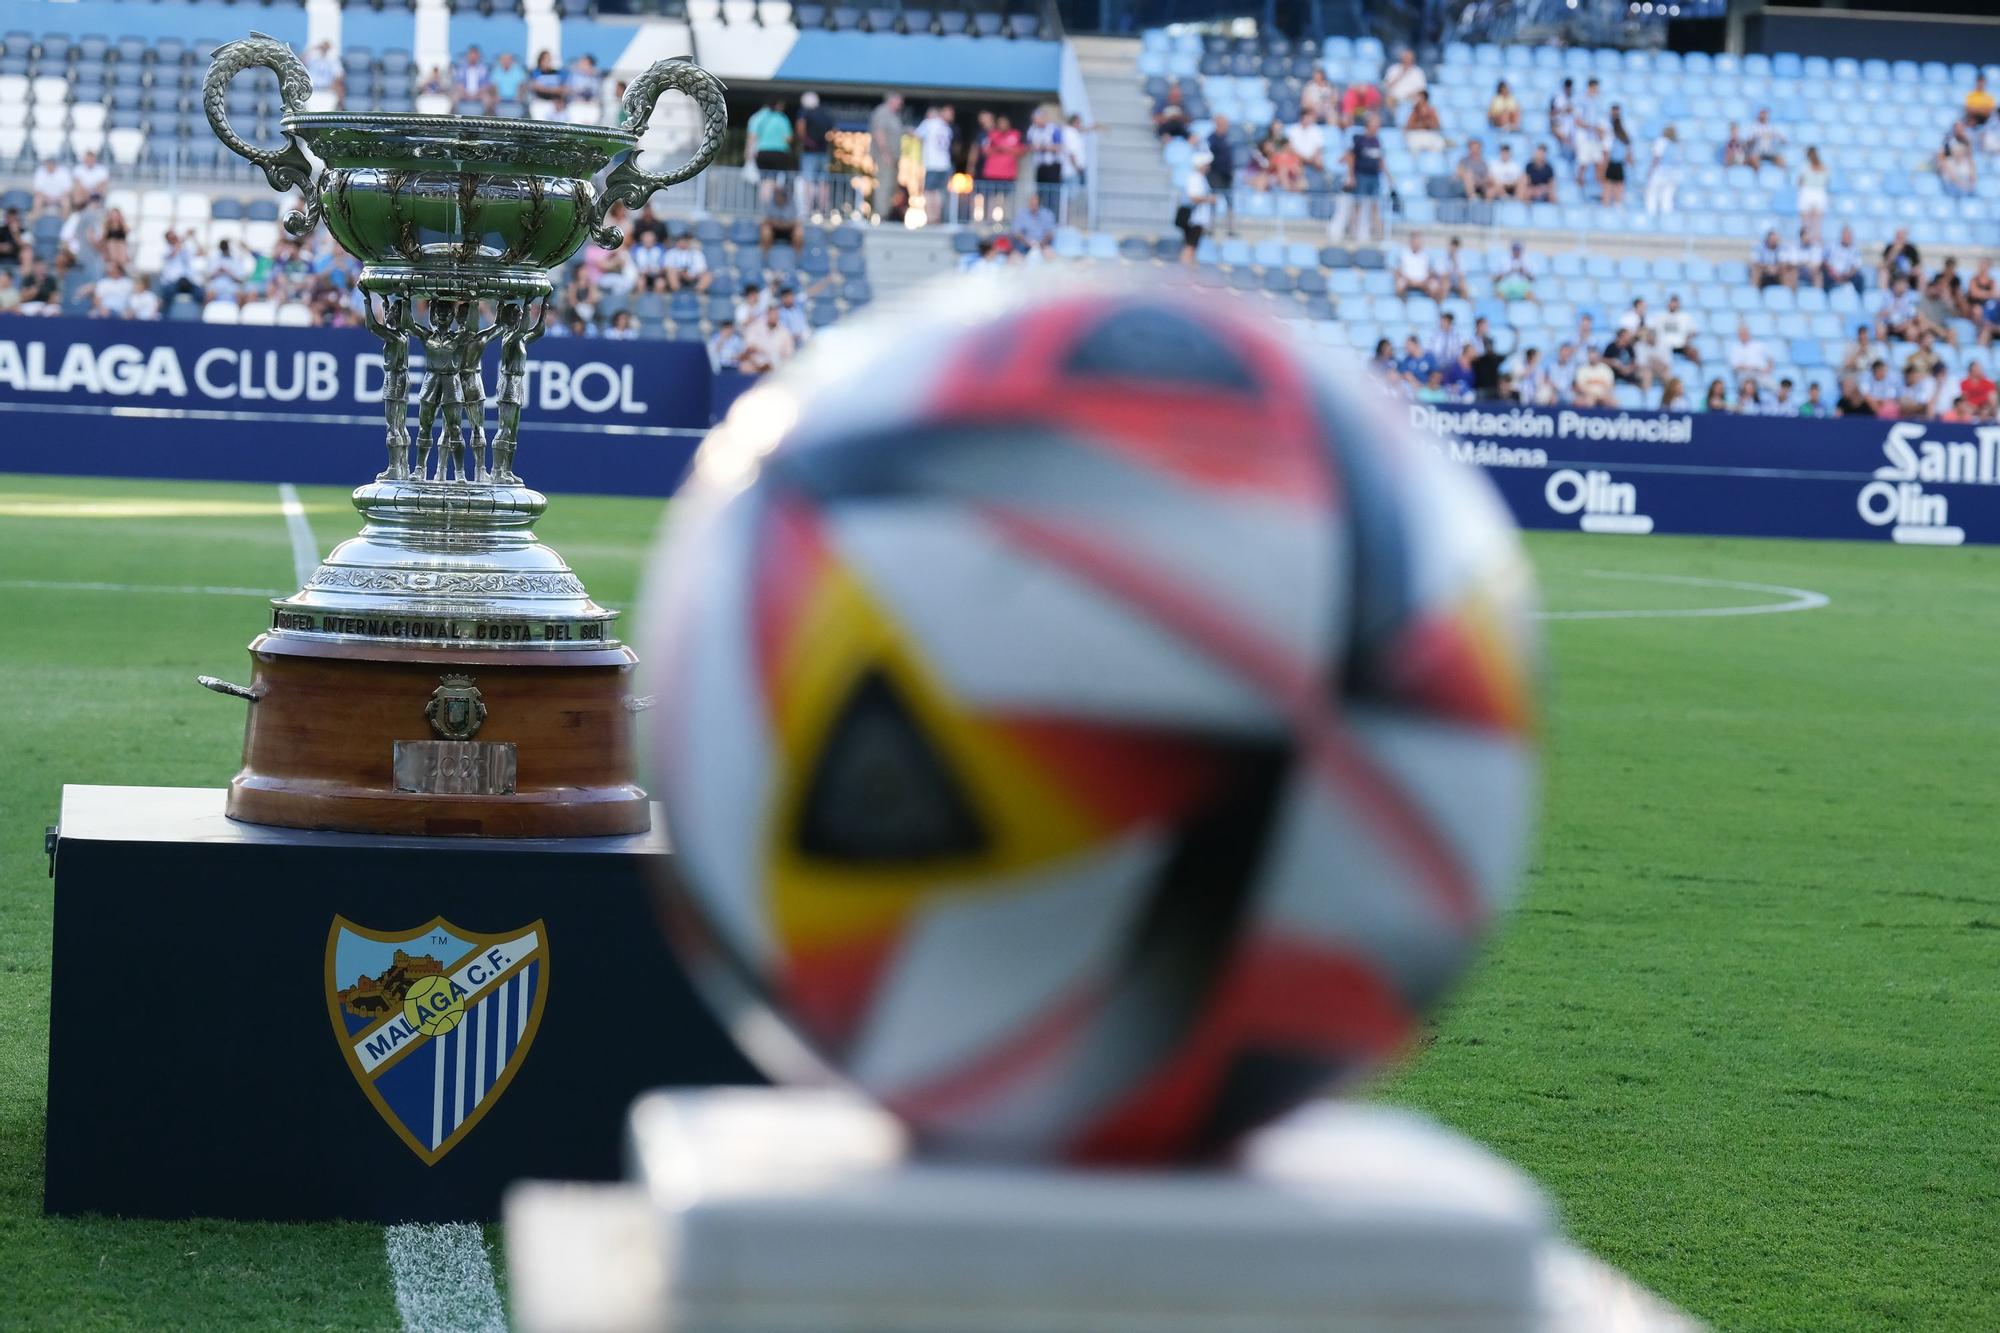 Málaga CF - Antequera CF: el Trofeo Costa del Sol, en imágenes